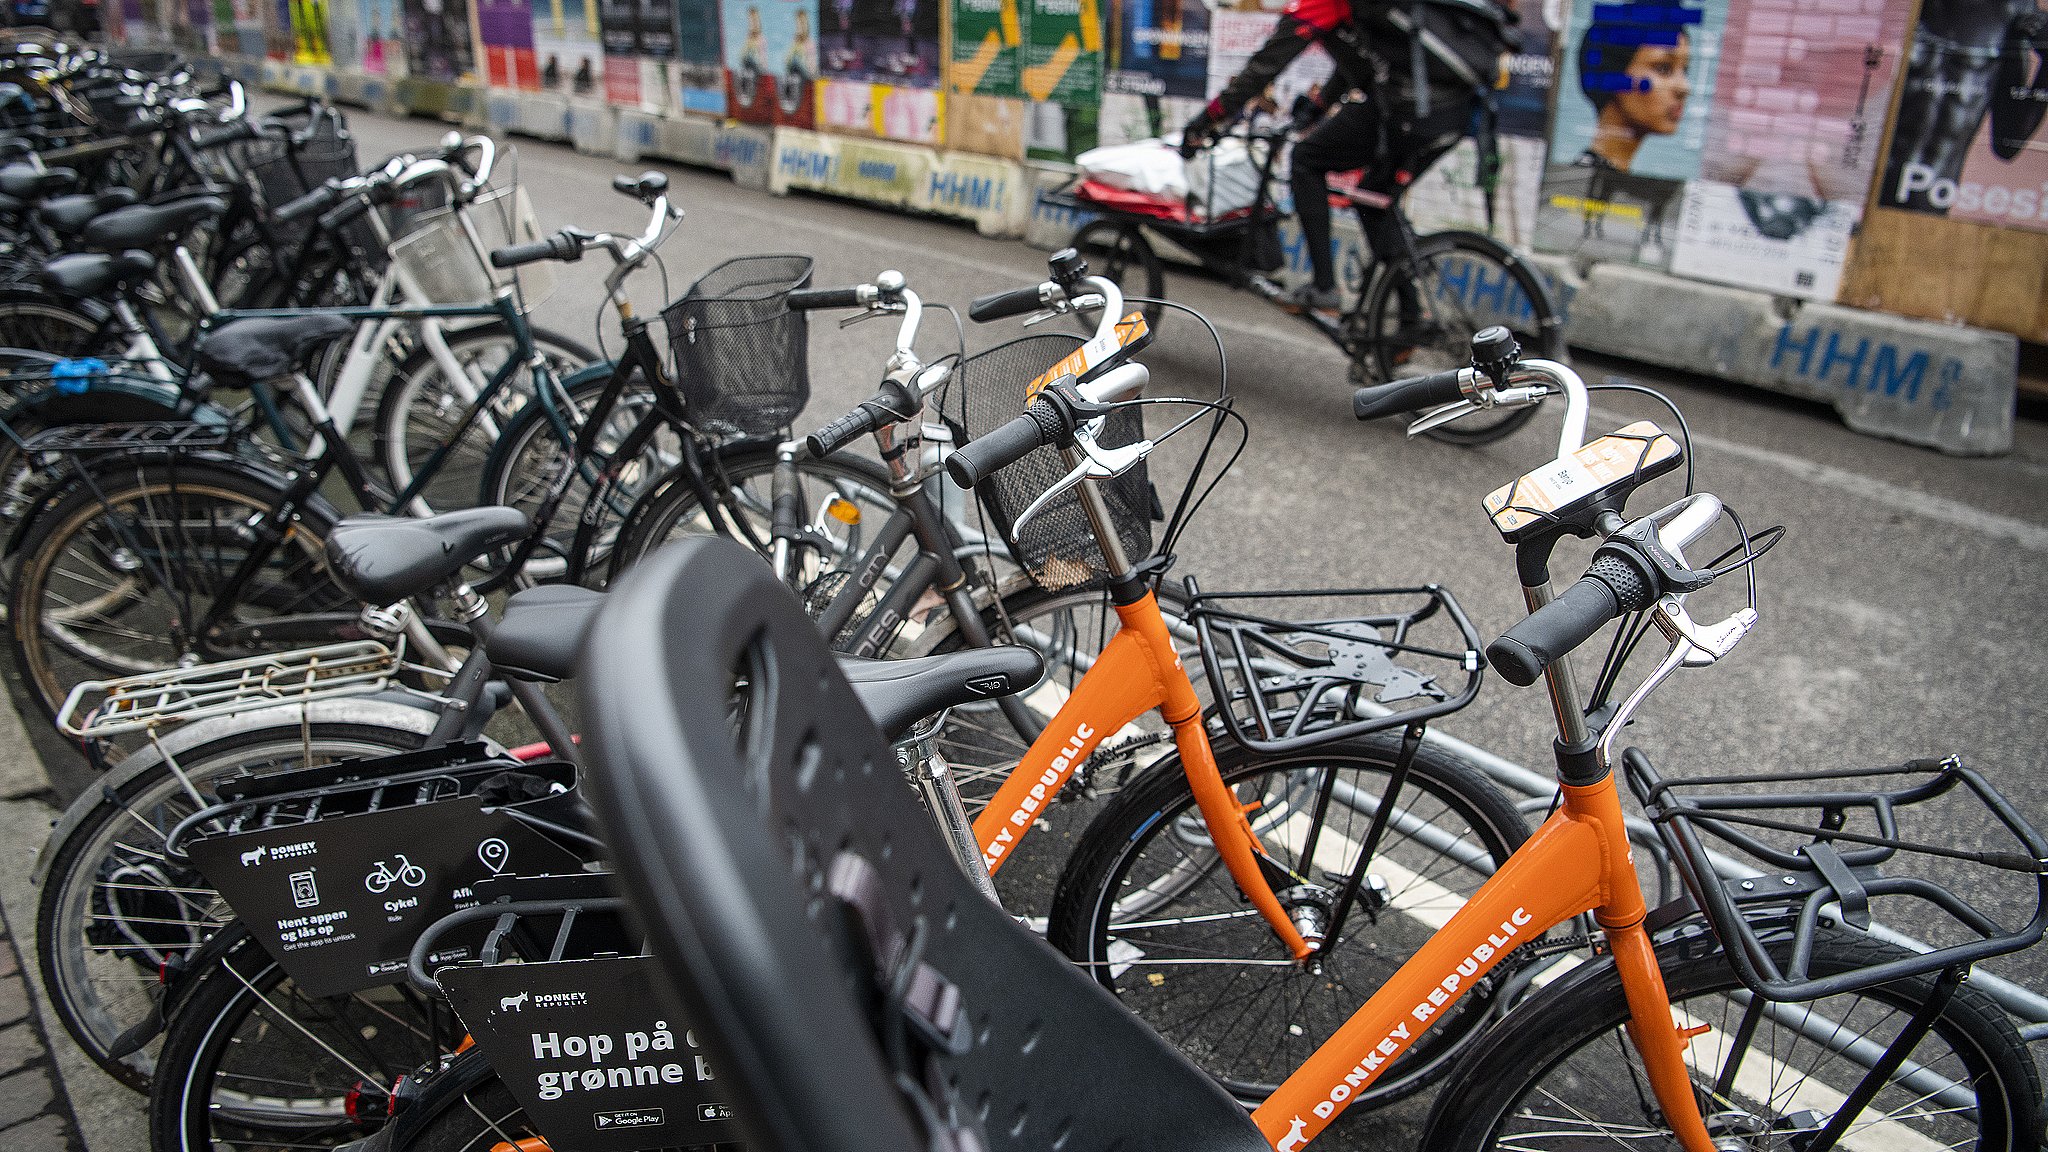 Dyre cykler sælges videre: Umuligt tjekke millioner af annoncer, siger DBA | TV 2 Fyn